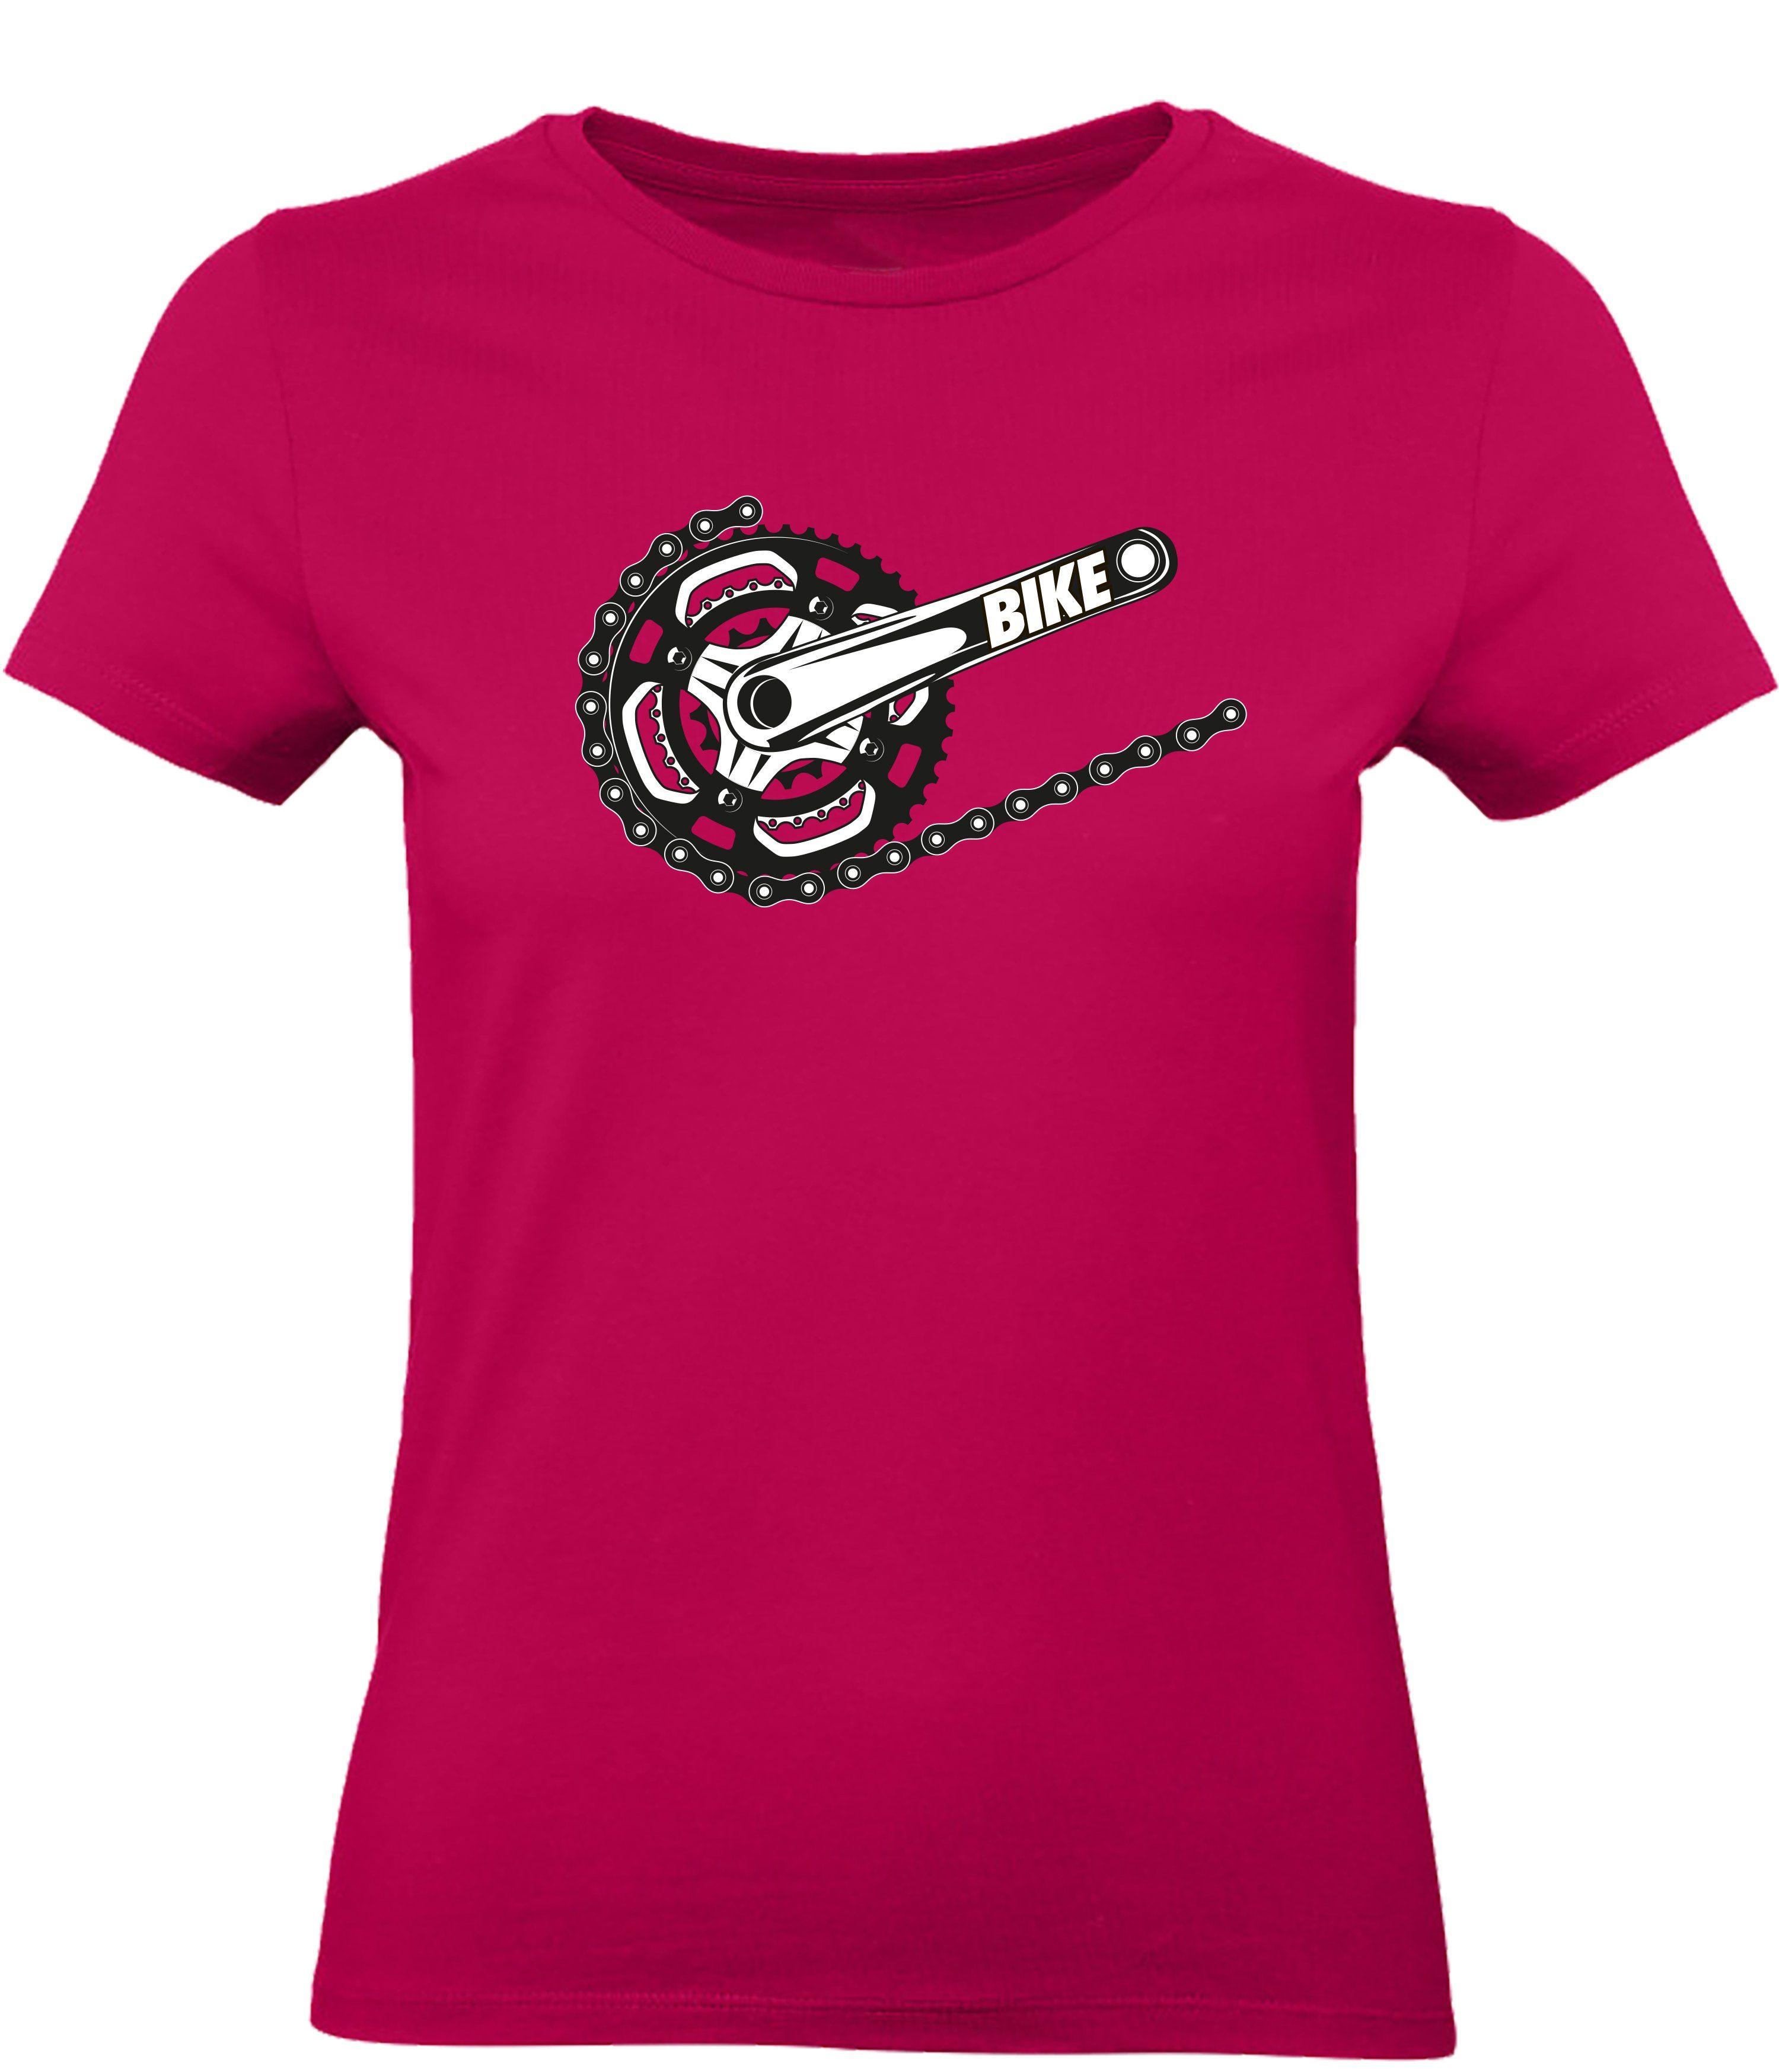 Baddery Print-Shirt Fahrrad T-shirt : Bike - Sport Tshirts Damen / Frauen, hochwertiger Siebdruck, aus Baumwolle